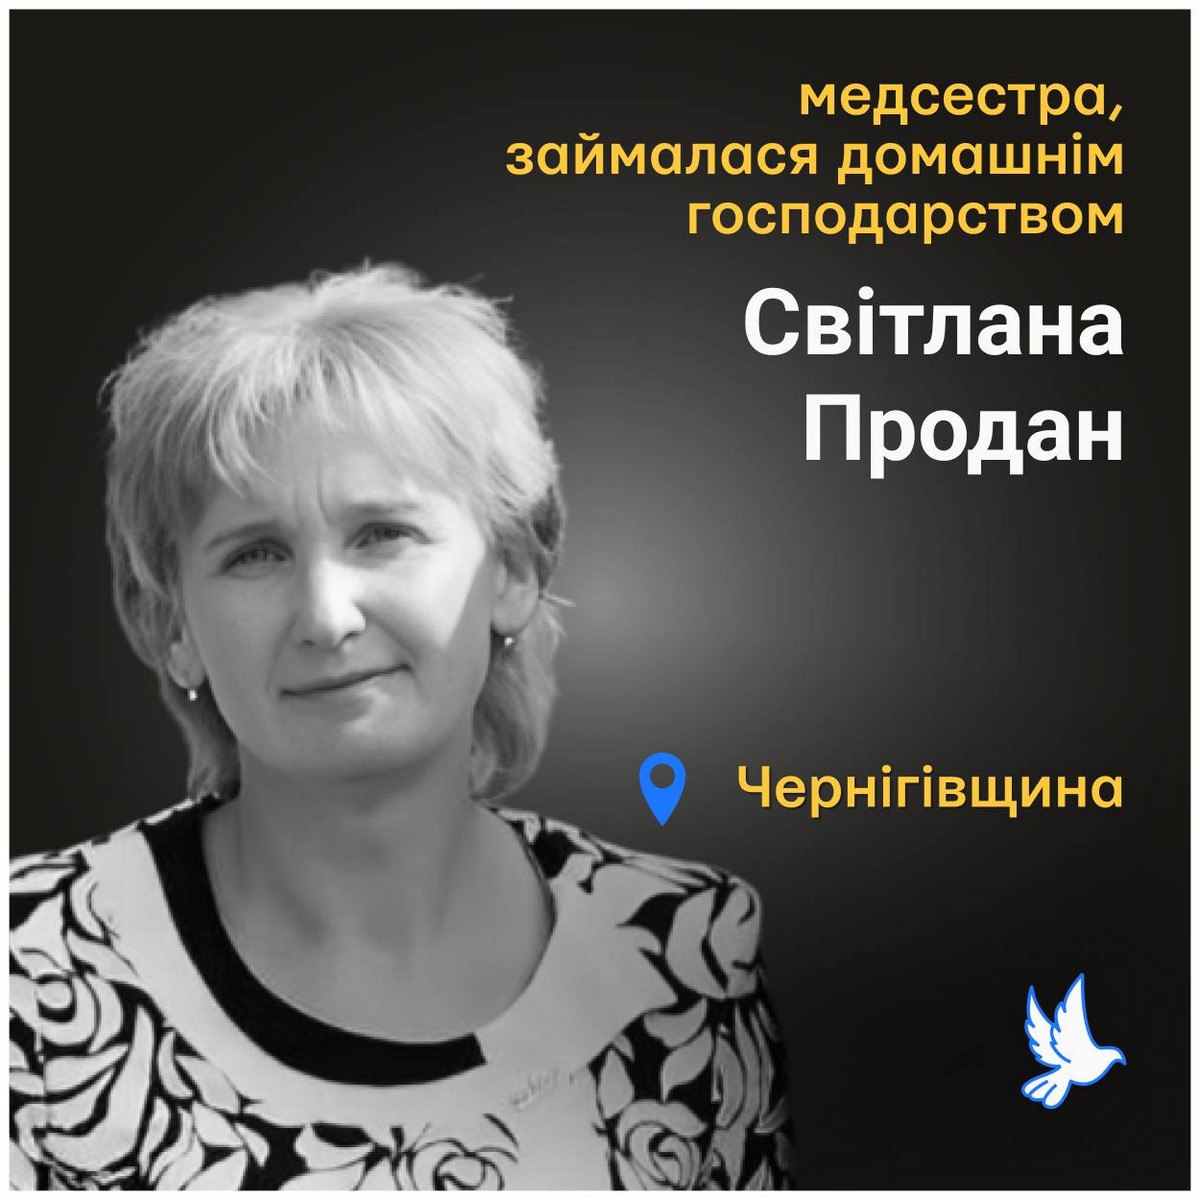 Меморіал: вбиті росією. Світлана Продан, 51 рік, Чернігівщина, березень